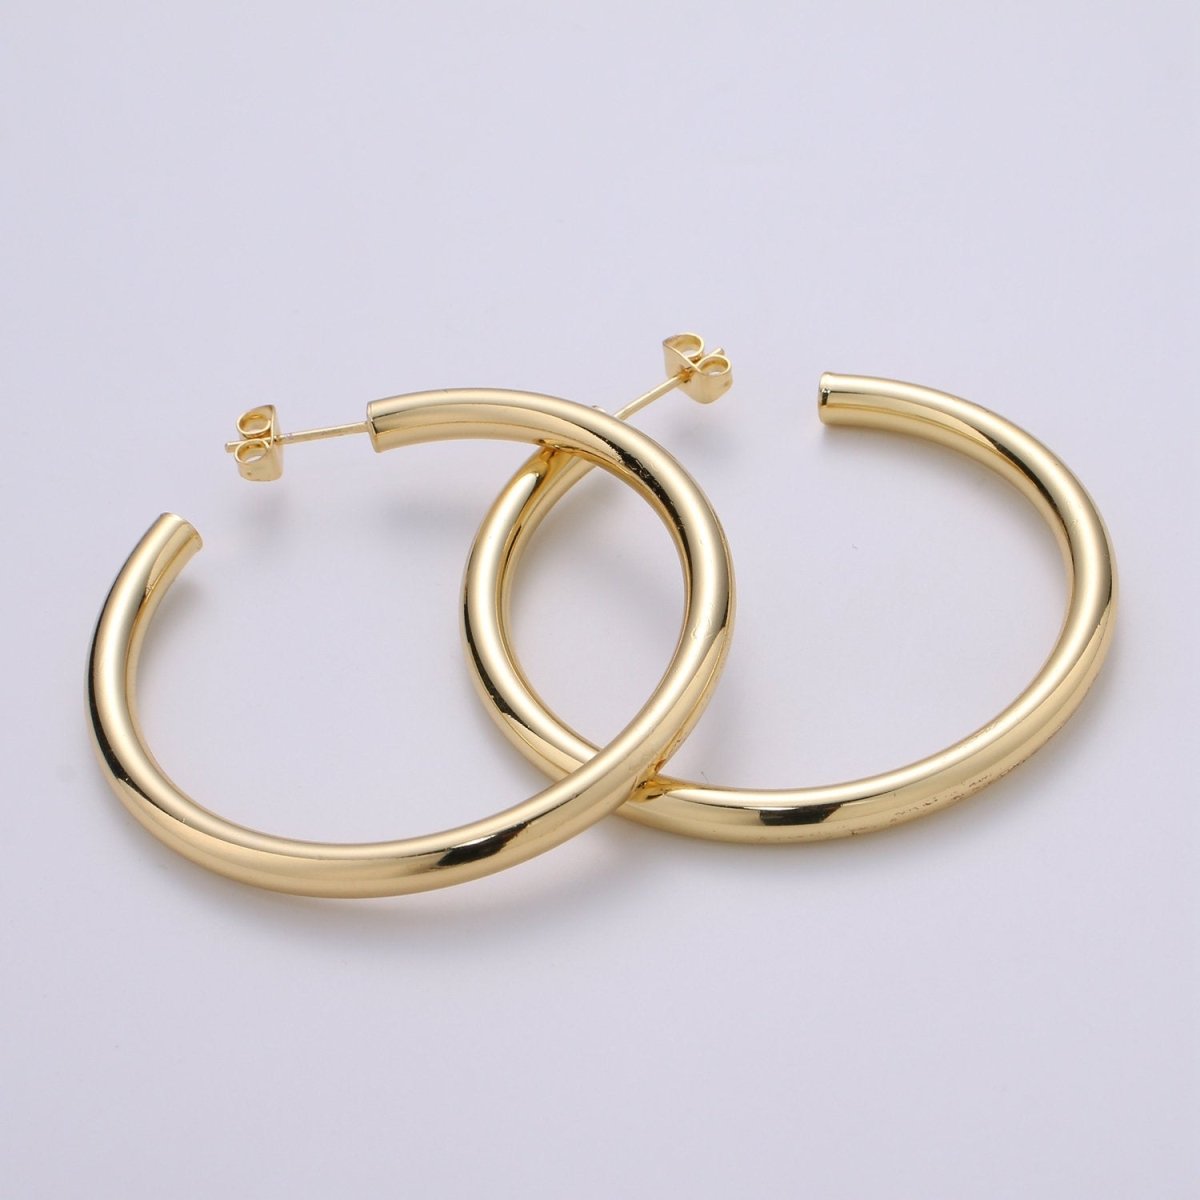 50mm Gold Thick Hoop Earrings, Gold Vermeil Hoop Earrings, Statement Hoops, Tube Hoop Earrings, Large Hoop Earrings, Big Hoop Earrings Q-315 - DLUXCA